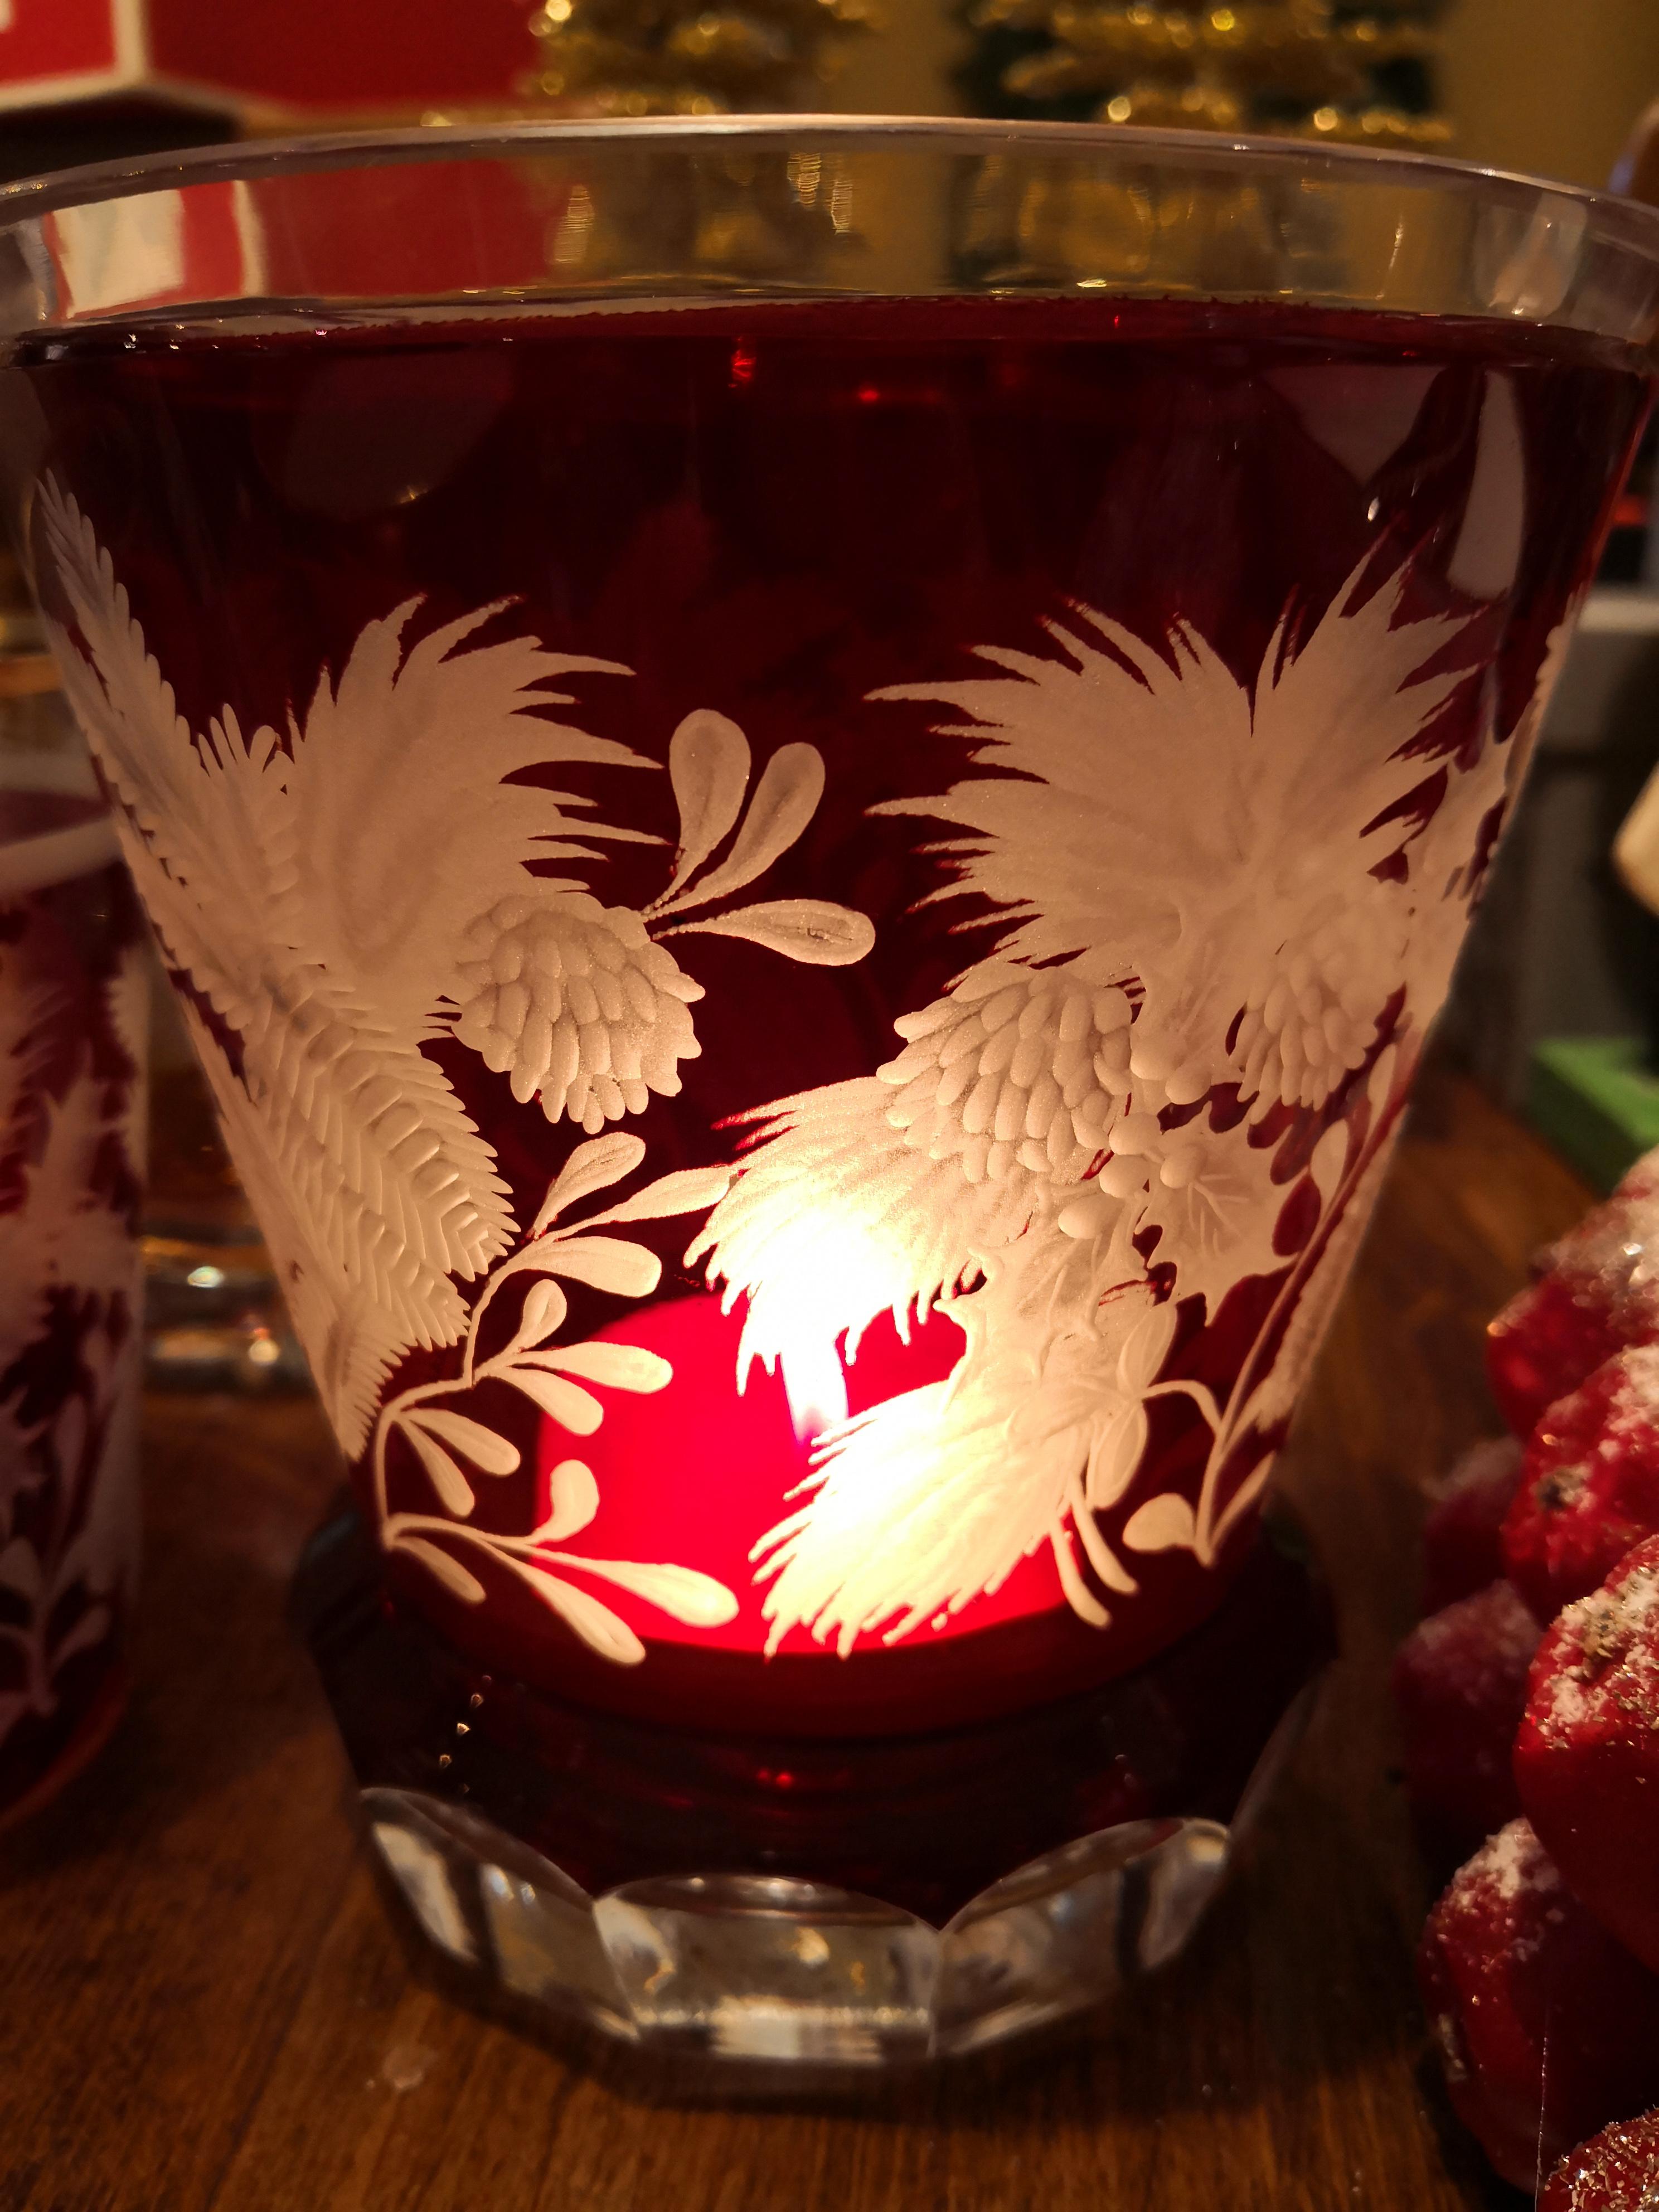 Vase/Laterne aus mundgeblasenem Kristall in leuchtend rotem Glas. Handgravur von bayerischen Glaskünstlern mit weihnachtlichem Dekor. Eine reiche Girlande aus Tannen- und Kiefernzapfen schmückt dieses Kristallgefäß. Kann mit einer Kerze als Laterne